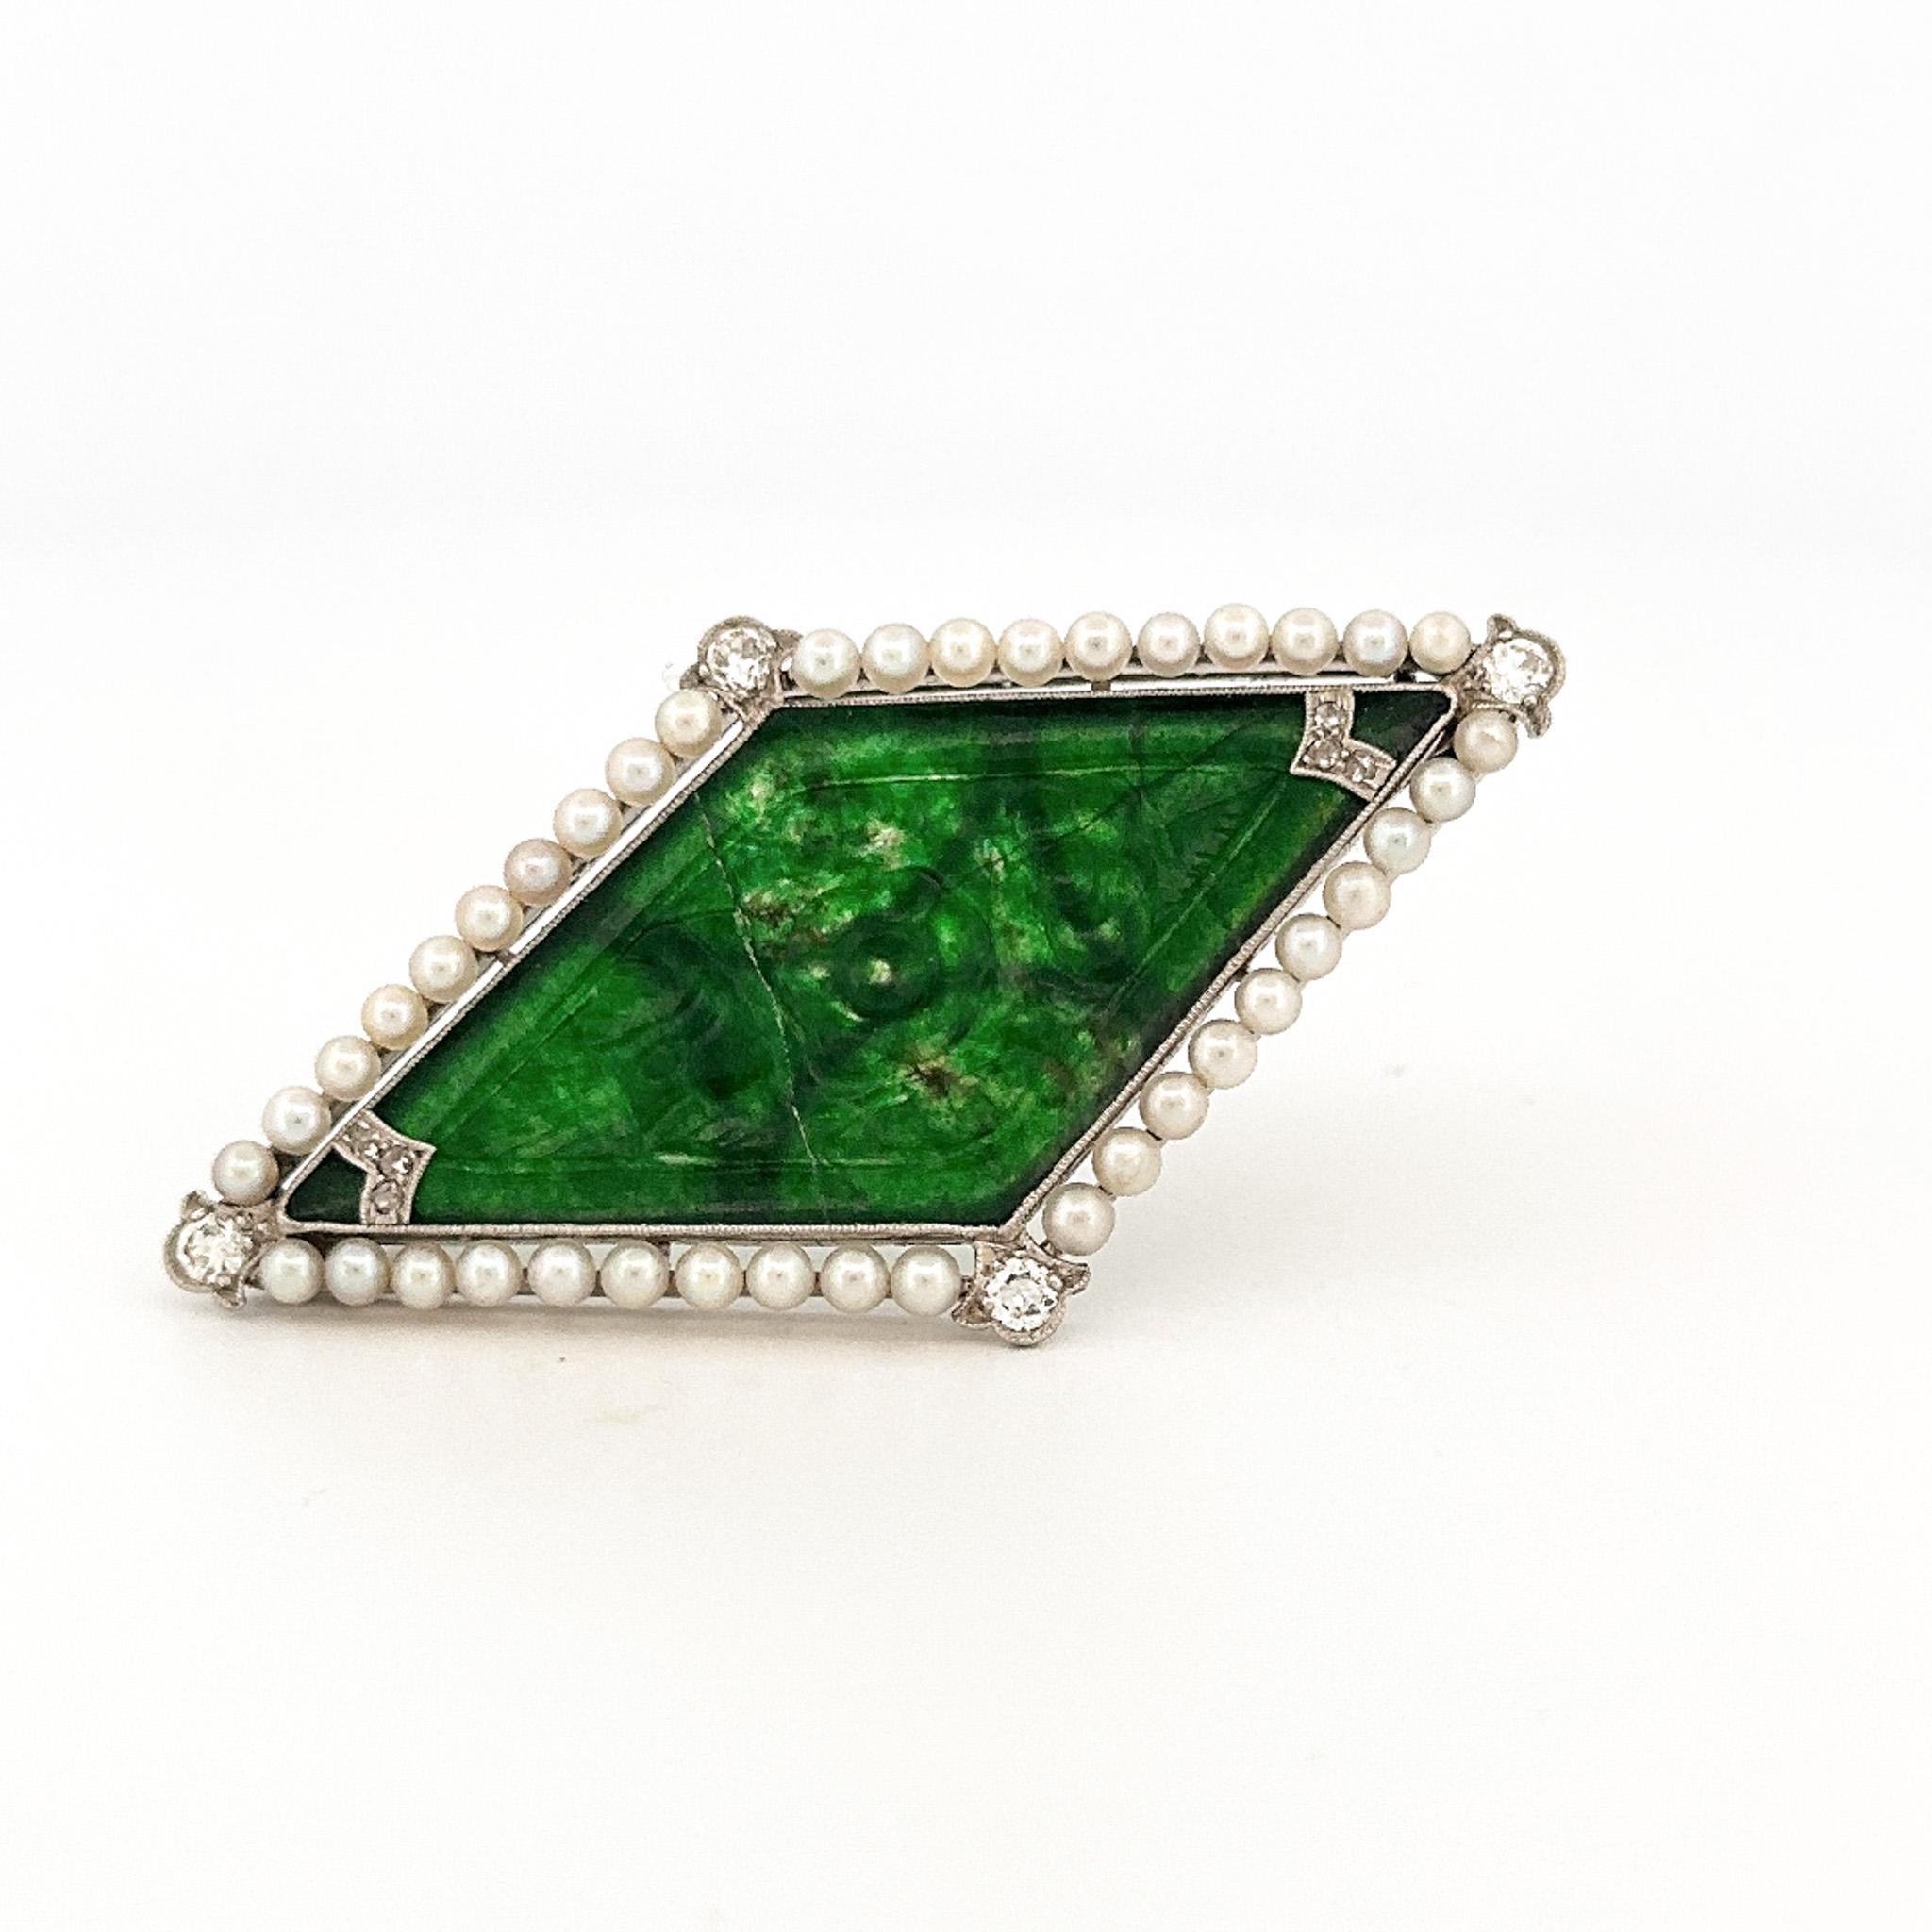 Aus der Eiseman Estate Jewelry Collection stammt diese vom Art déco inspirierte Brosche aus Platin mit Jade, Perlen und Diamanten. Diese Brosche besteht aus einem geschnitzten Jadeschiefer, der von Perlen mit Diamantakzenten umgeben ist. Die Jade